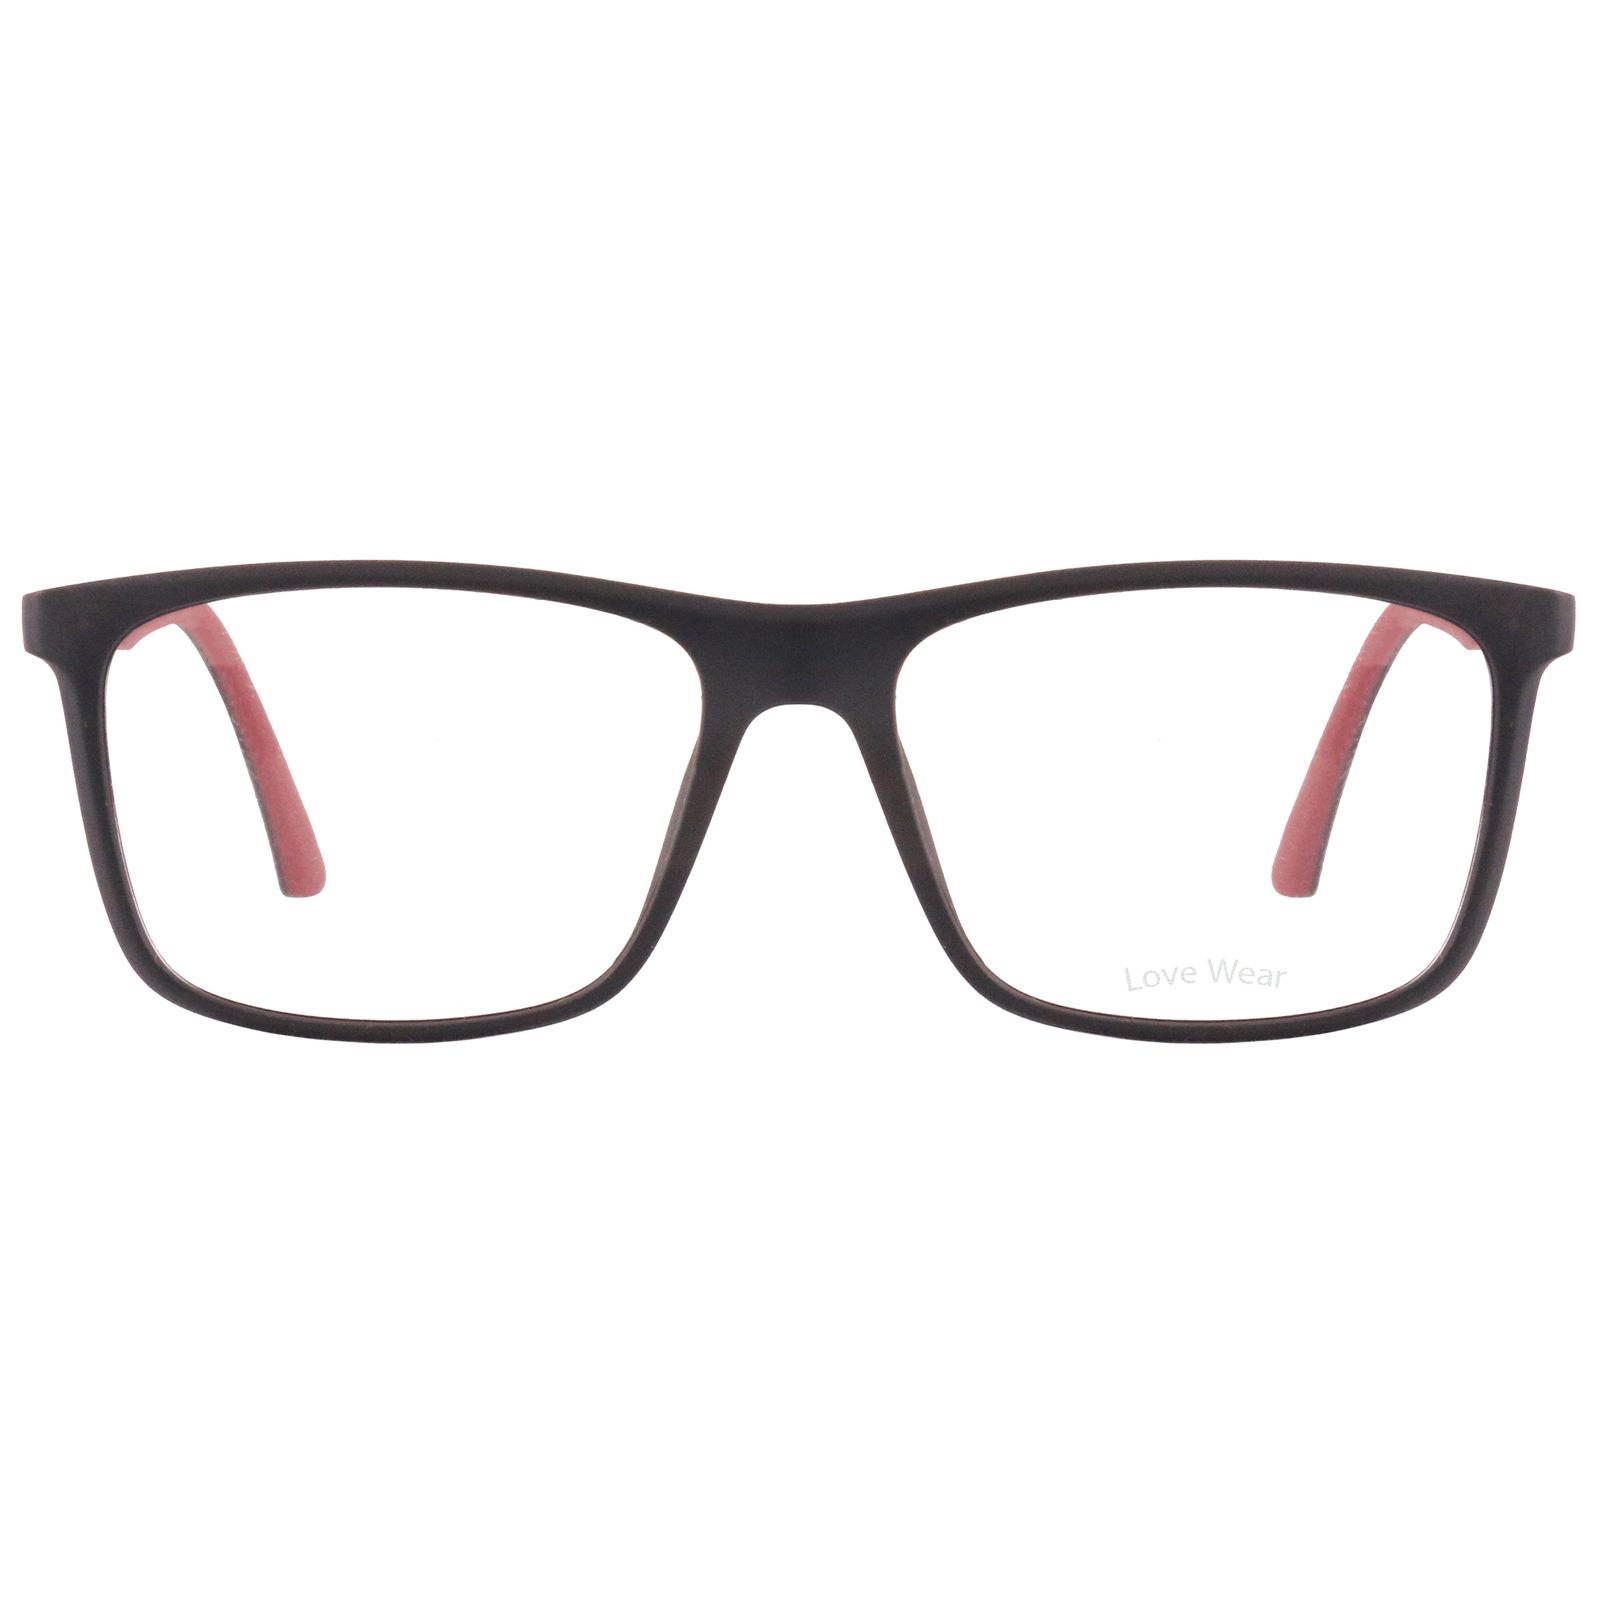 فریم عینک طبی لاو ور مدل 2023-C2 -  - 1